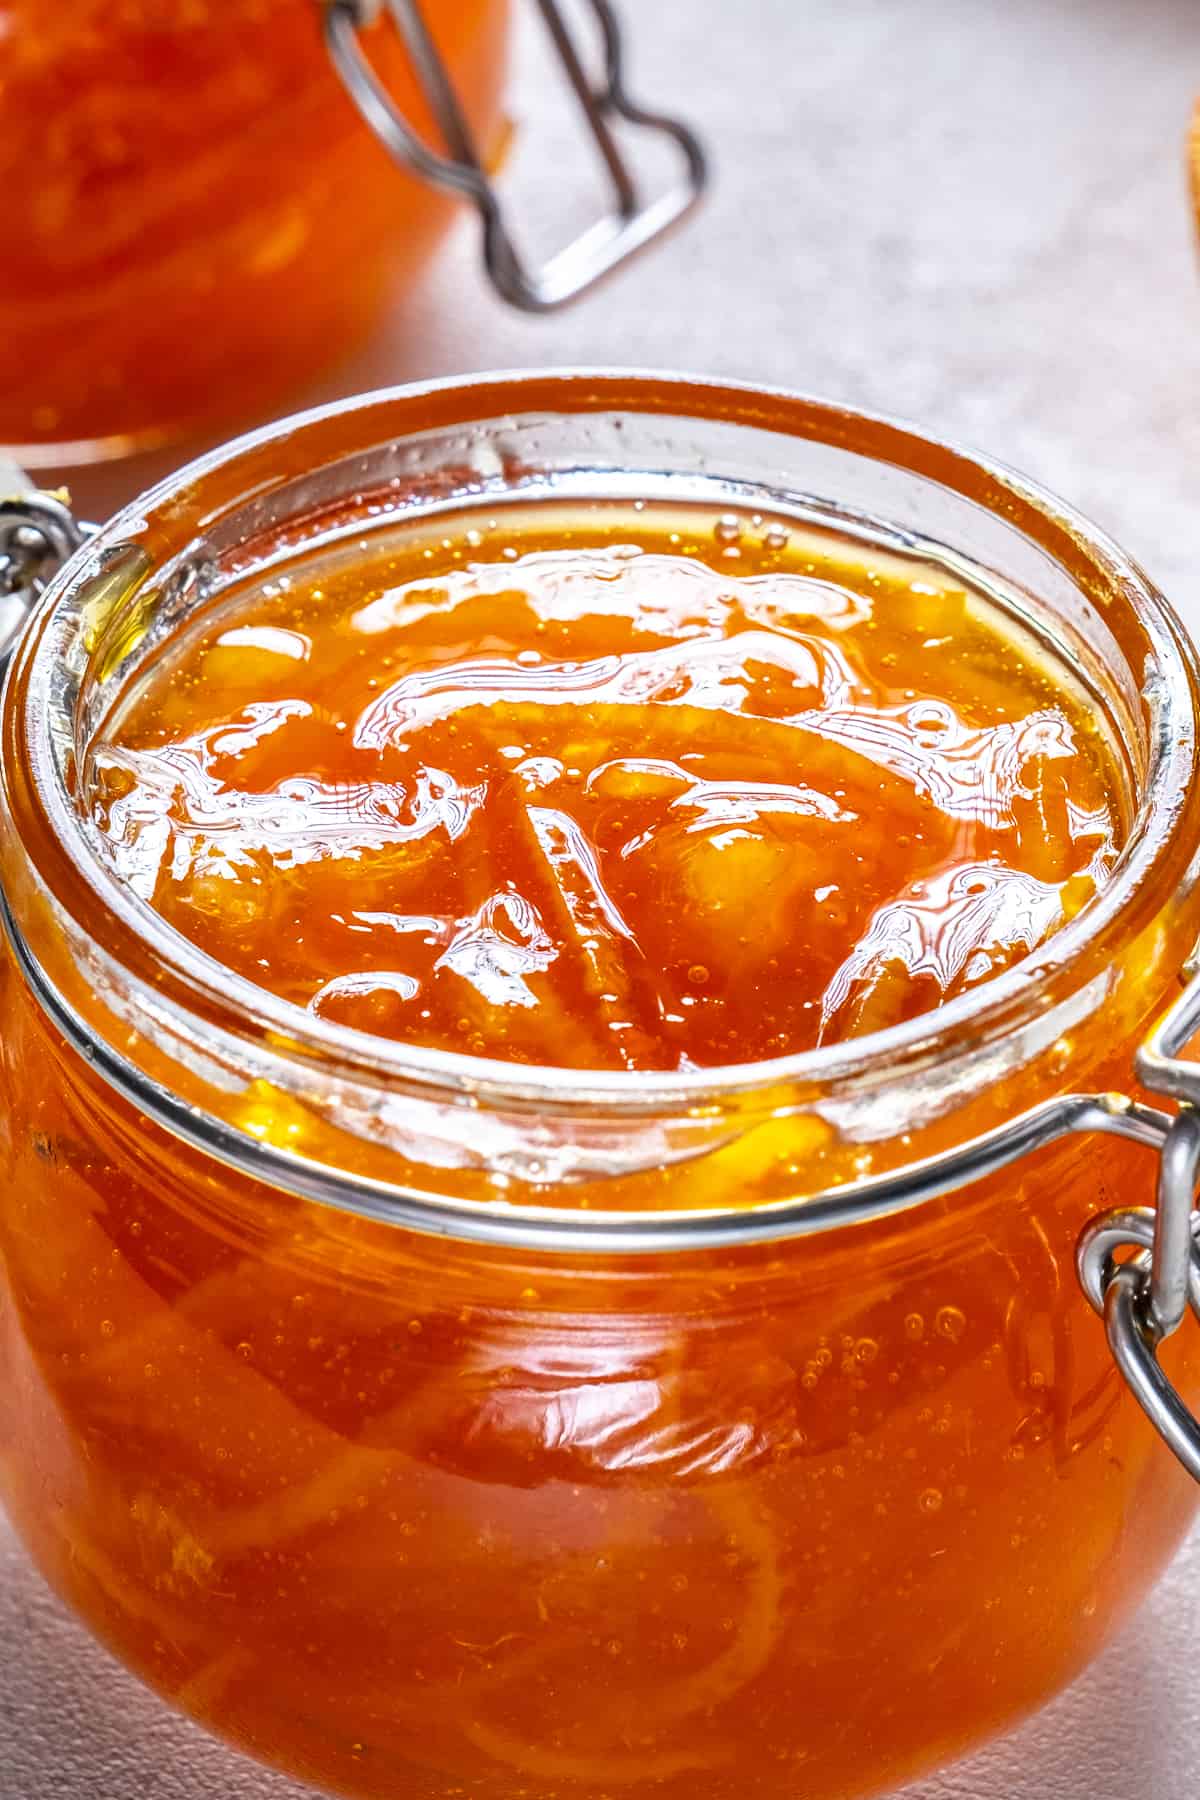 橘子酱装在玻璃罐里。